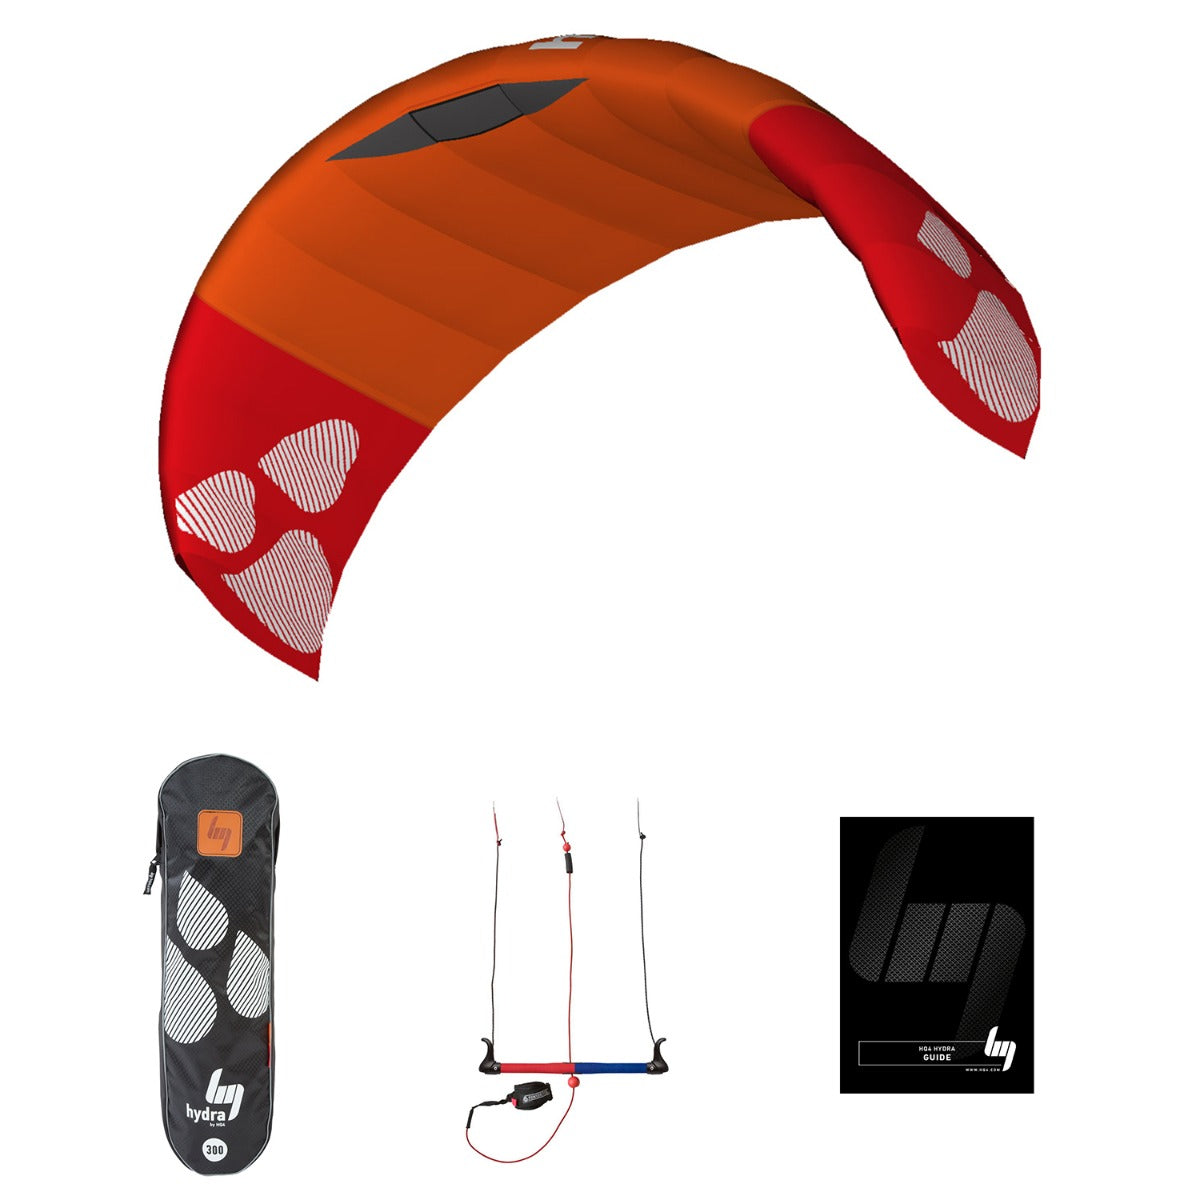 Lenkmatte HQ4 Hydra 300 R2F Trainer Power Kite Lenkdrachen